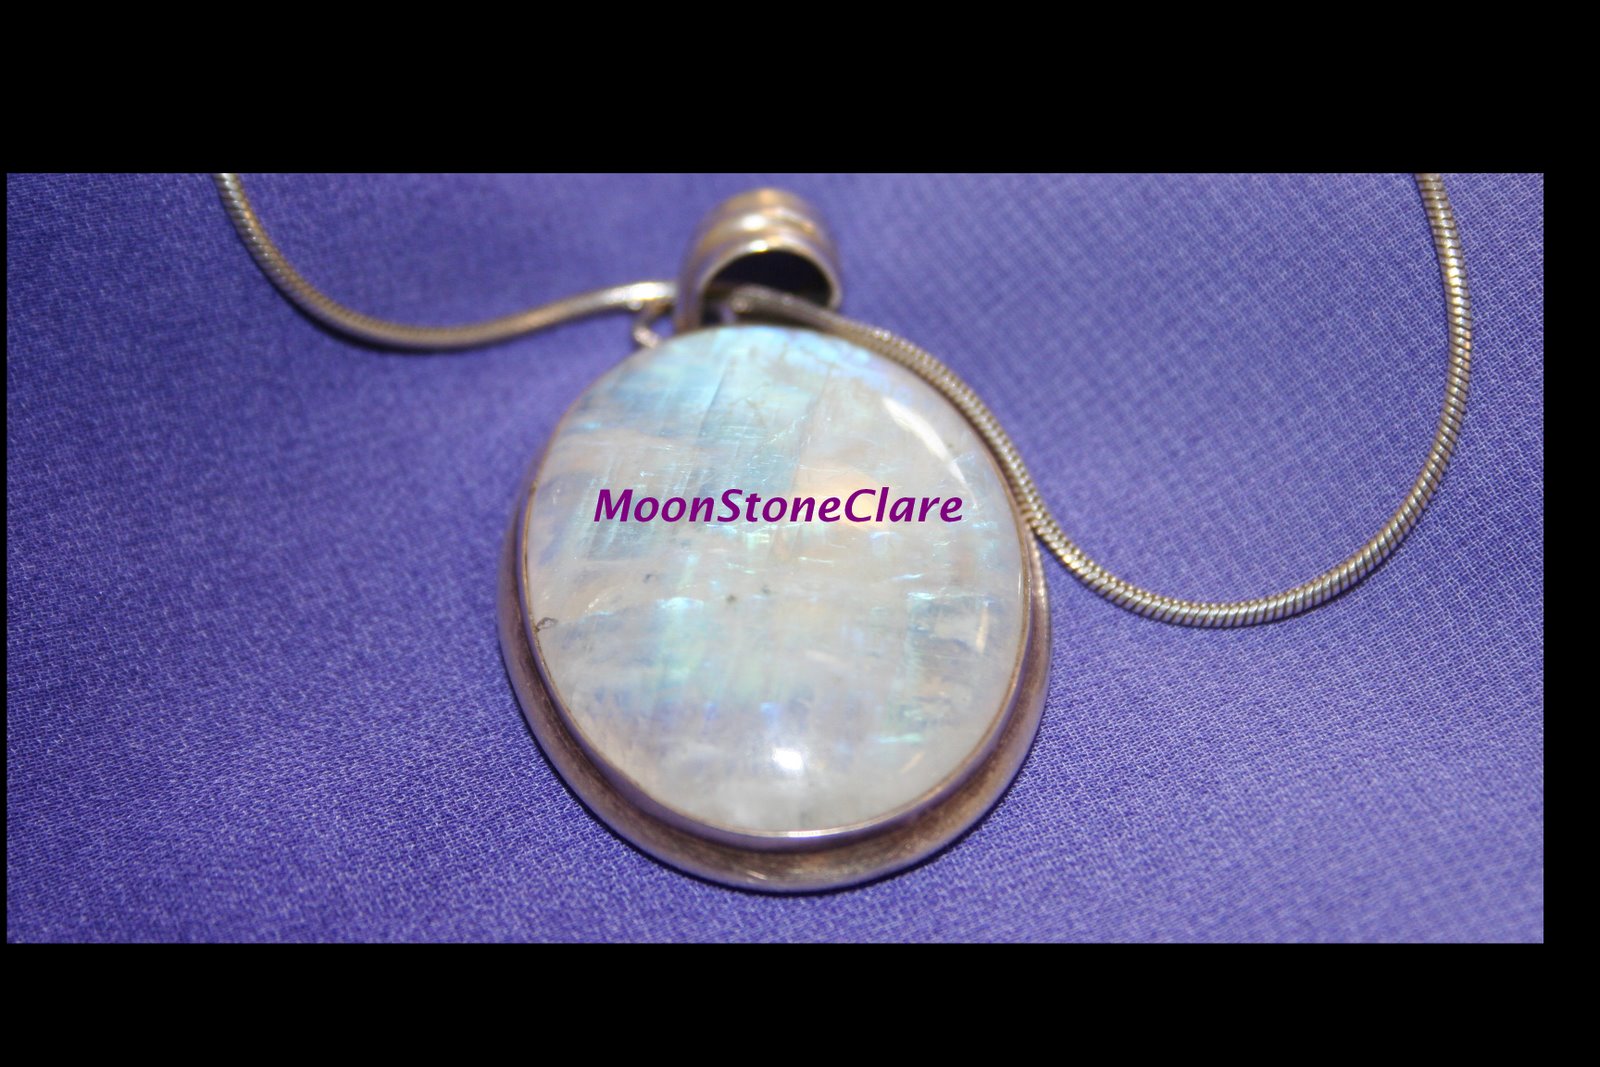 MoonStoneClare